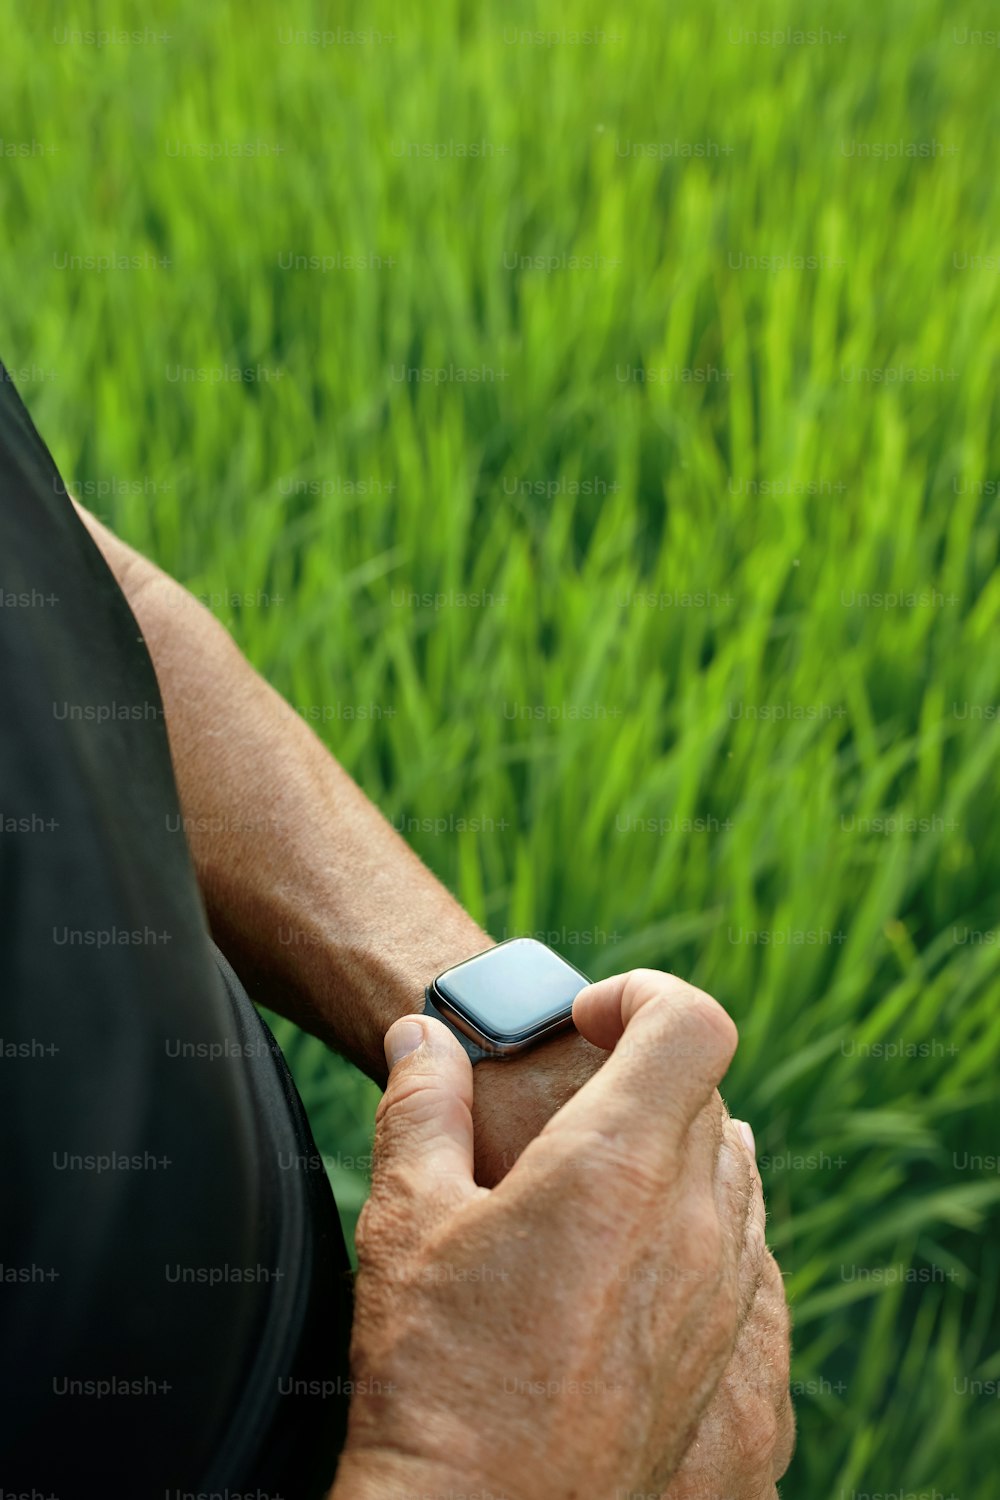 야외에서 운동을 한 후 스마트 시계를 확인하는 스포티한 남자. 논밭의 푸른 잔디에 손목에 피트니스 트래커를 착용한 남성의 손을 닫습니다.